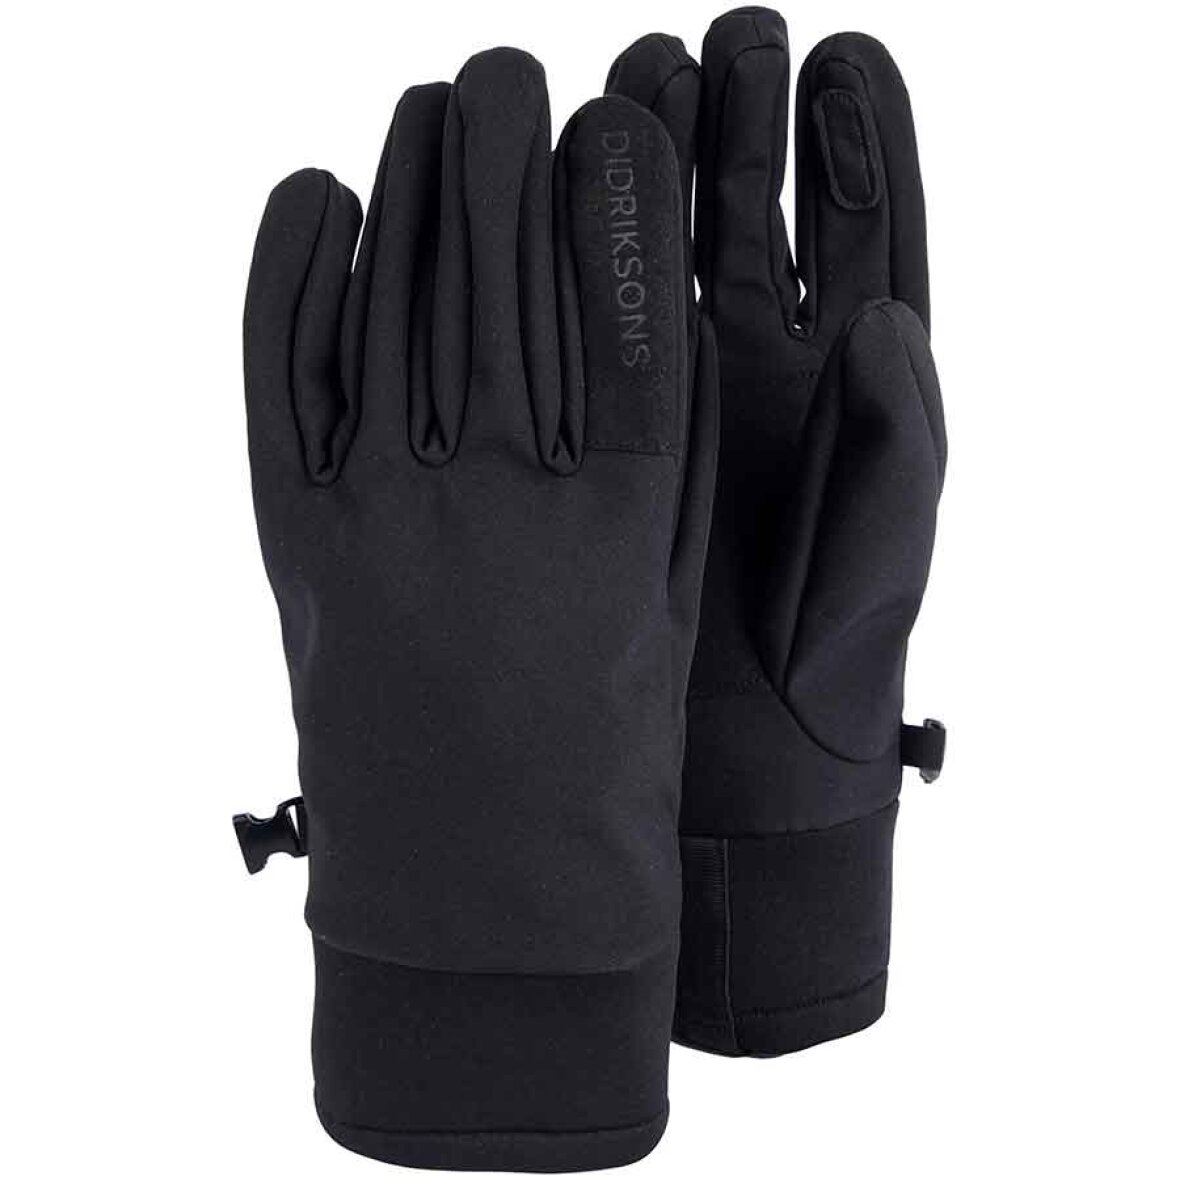 græsplæne uddrag Profet Didriksons Isa Softshell Gloves W black | Skønne handsker - 94% Polyester |  Køb